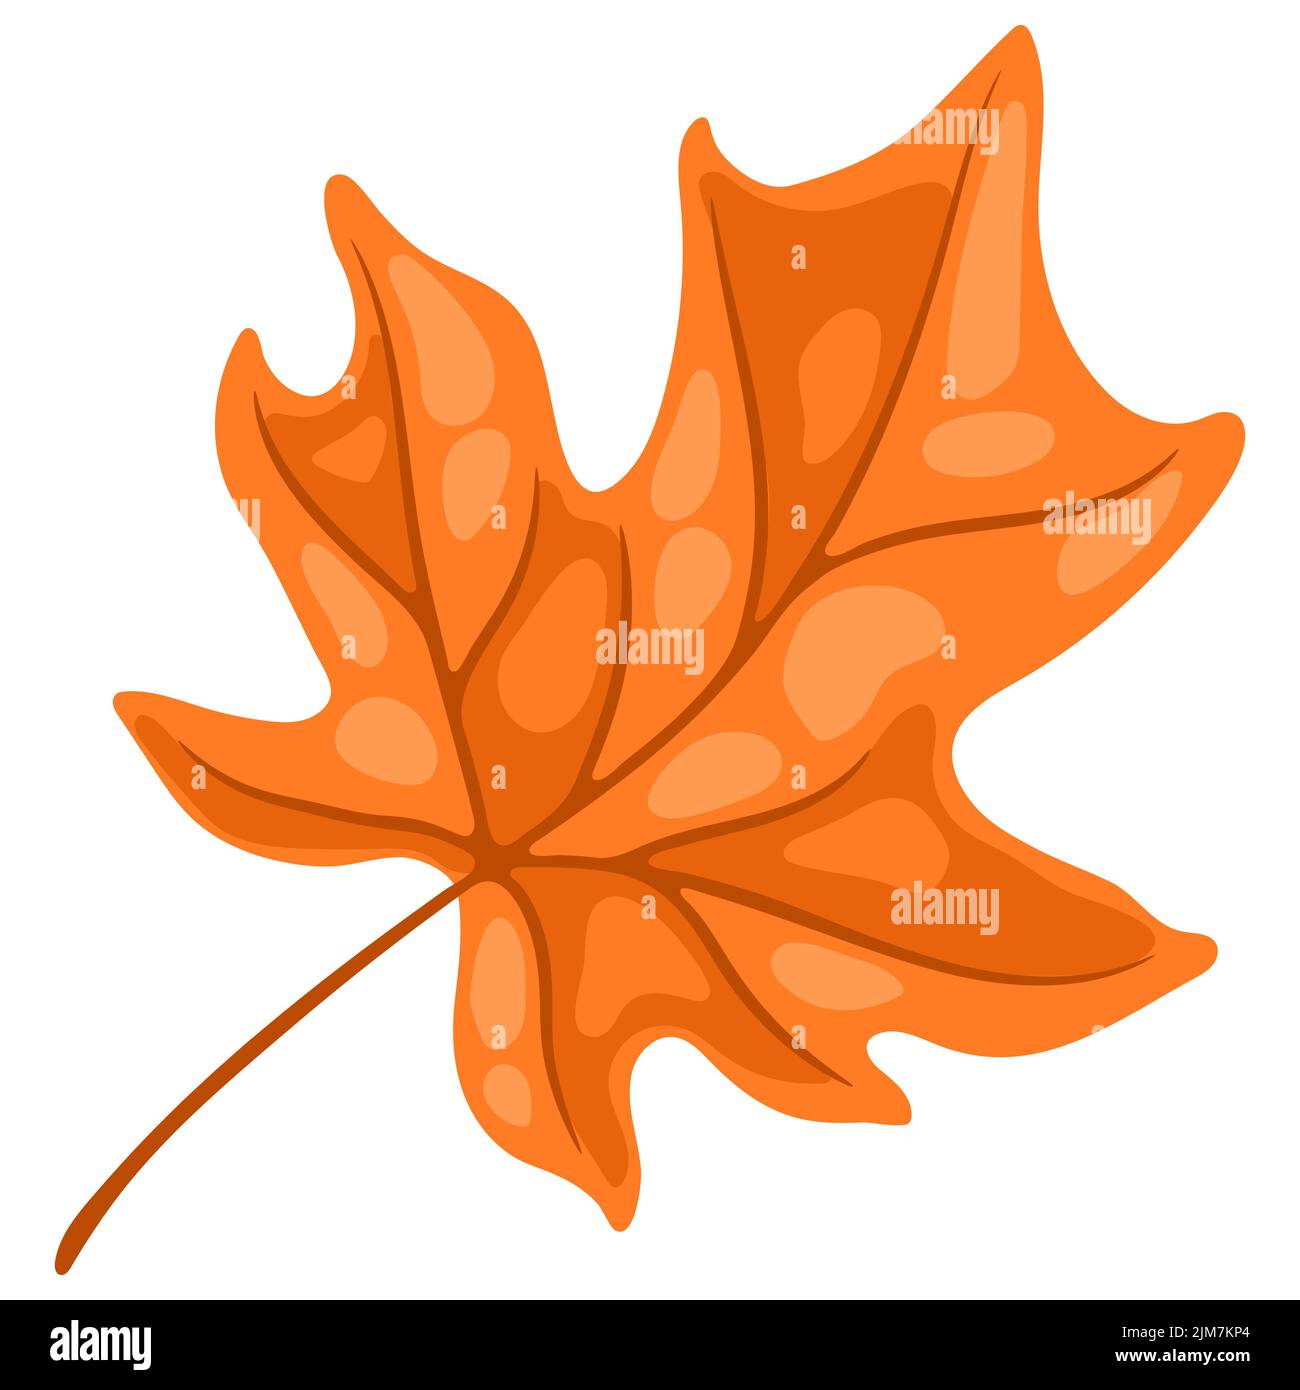 Illustration de la feuille d'érable. Image de la plante d'automne saisonnière. Illustration de Vecteur